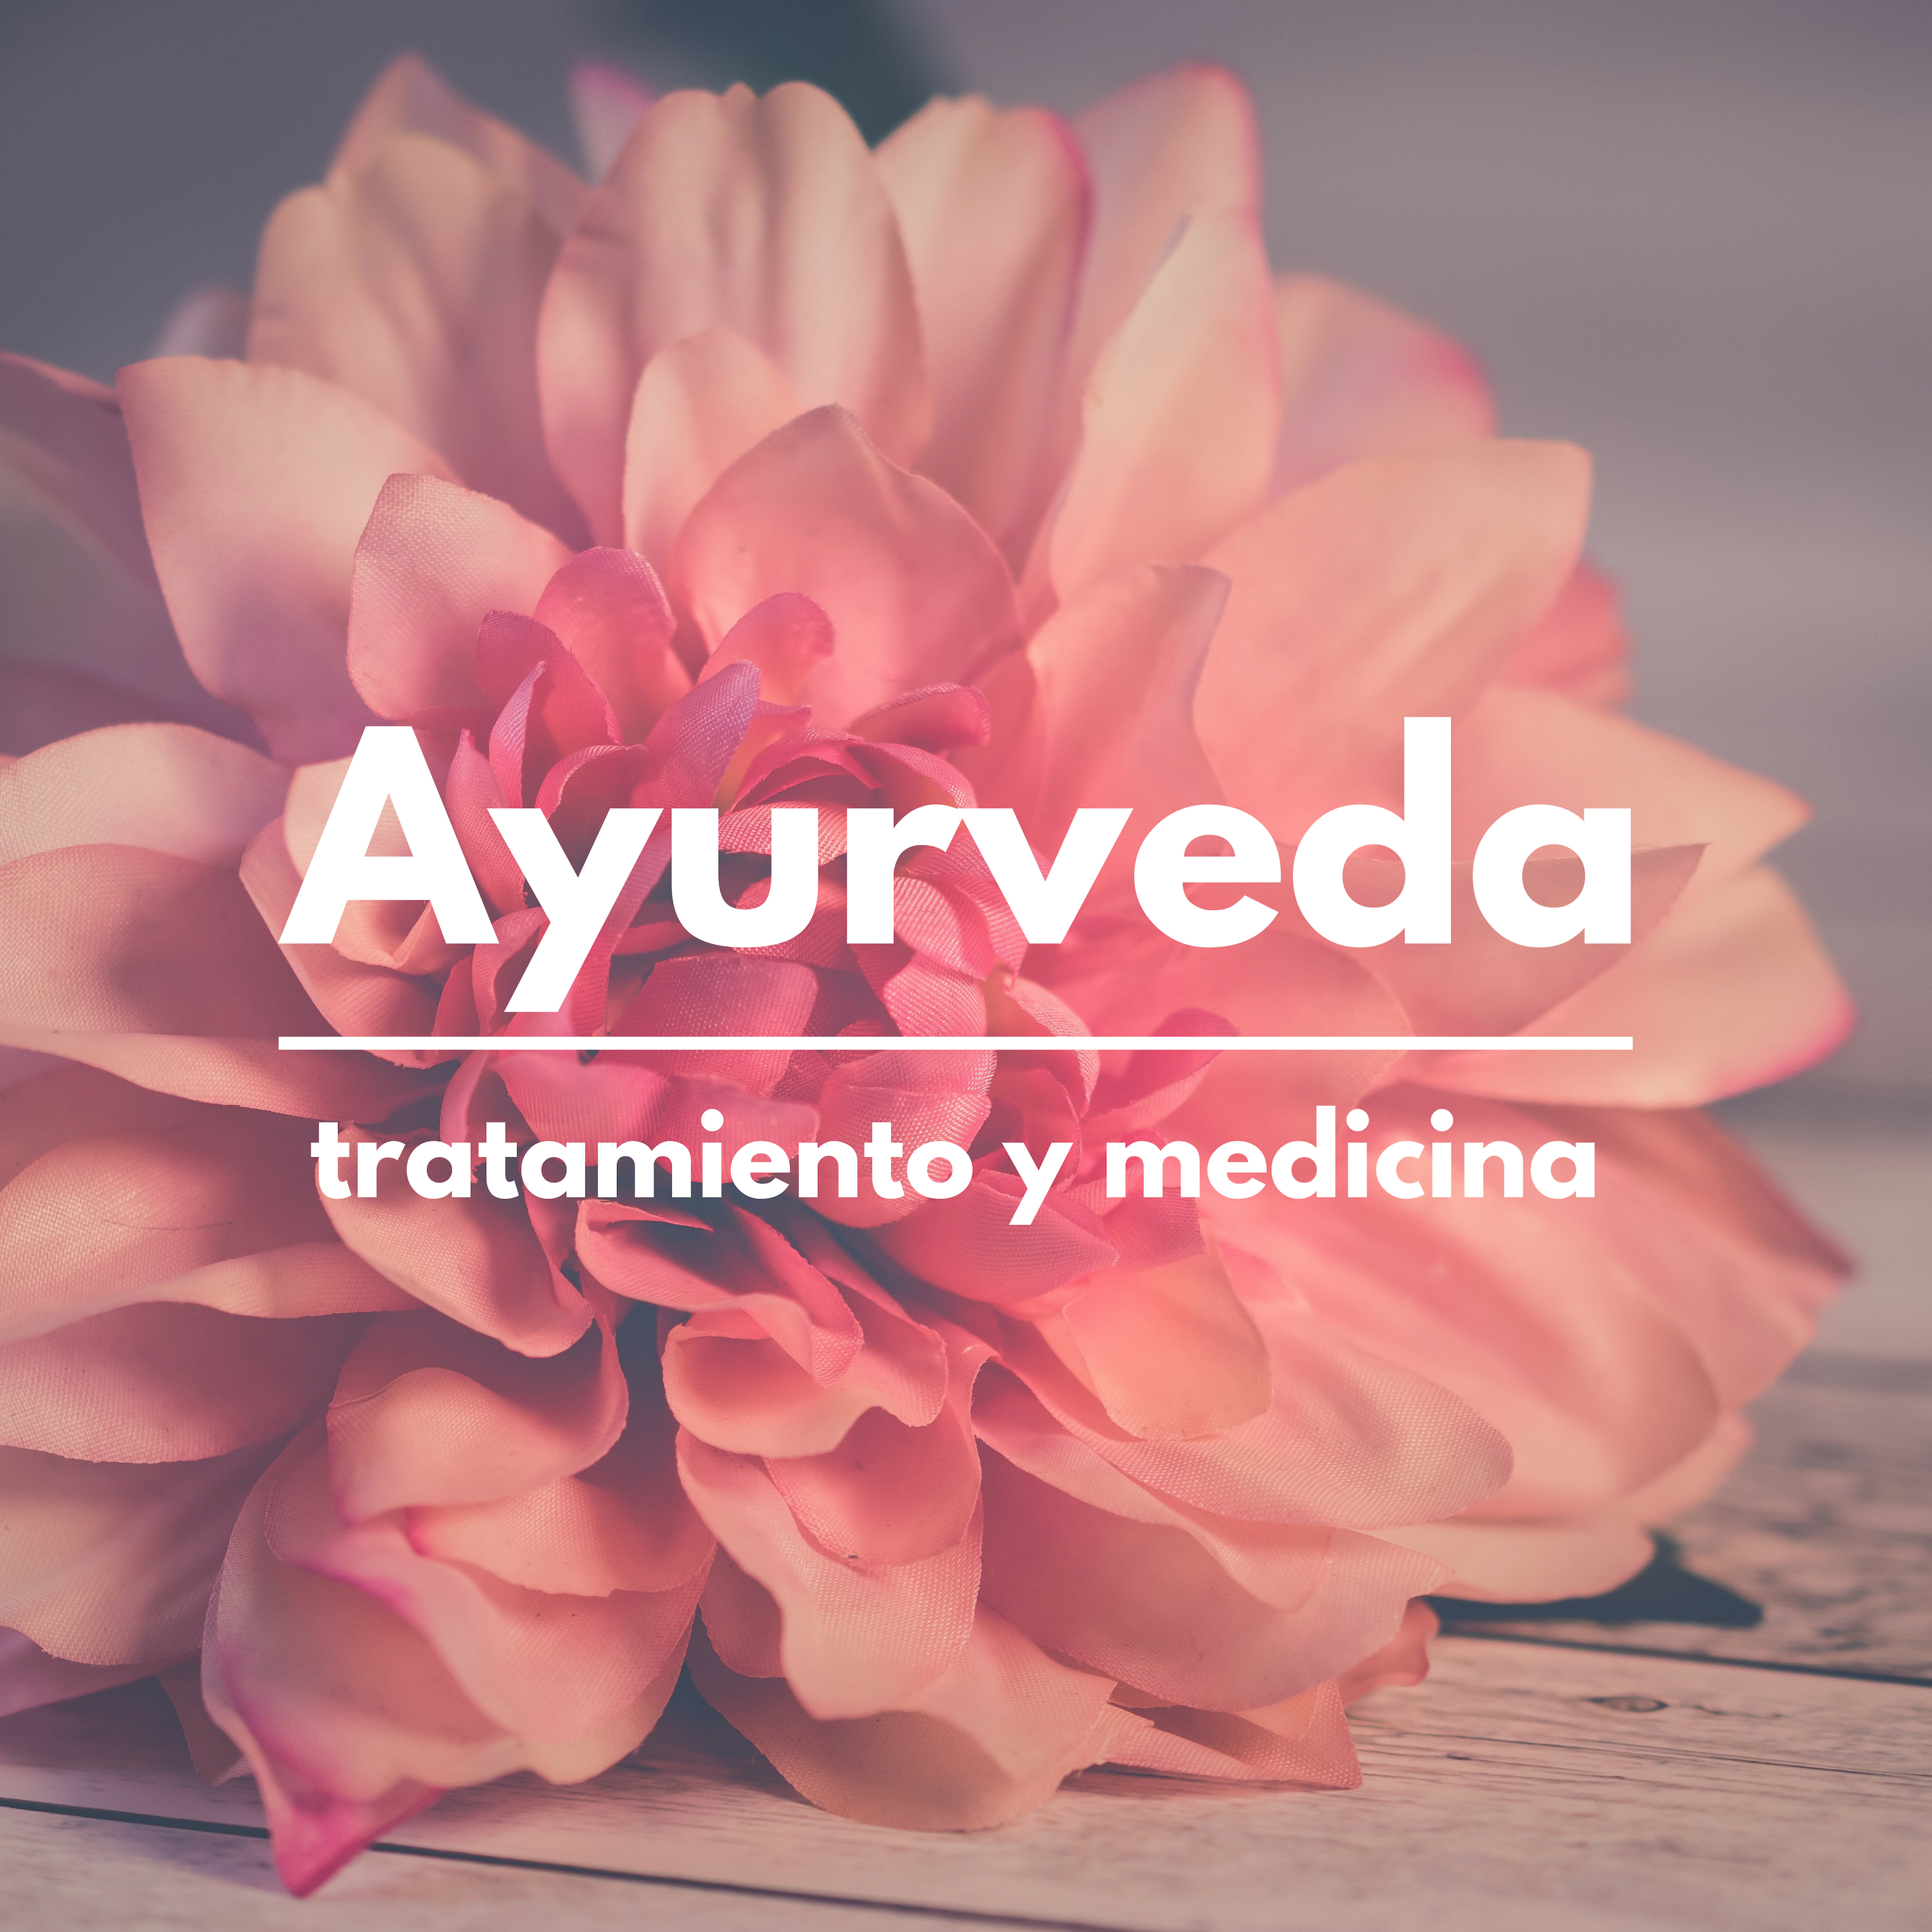 Ayurveda: Tratamiento y Medicina - Canciones Curas Ayurvédicas, Medicina Holística Tradicional, Ciencia de la Vida